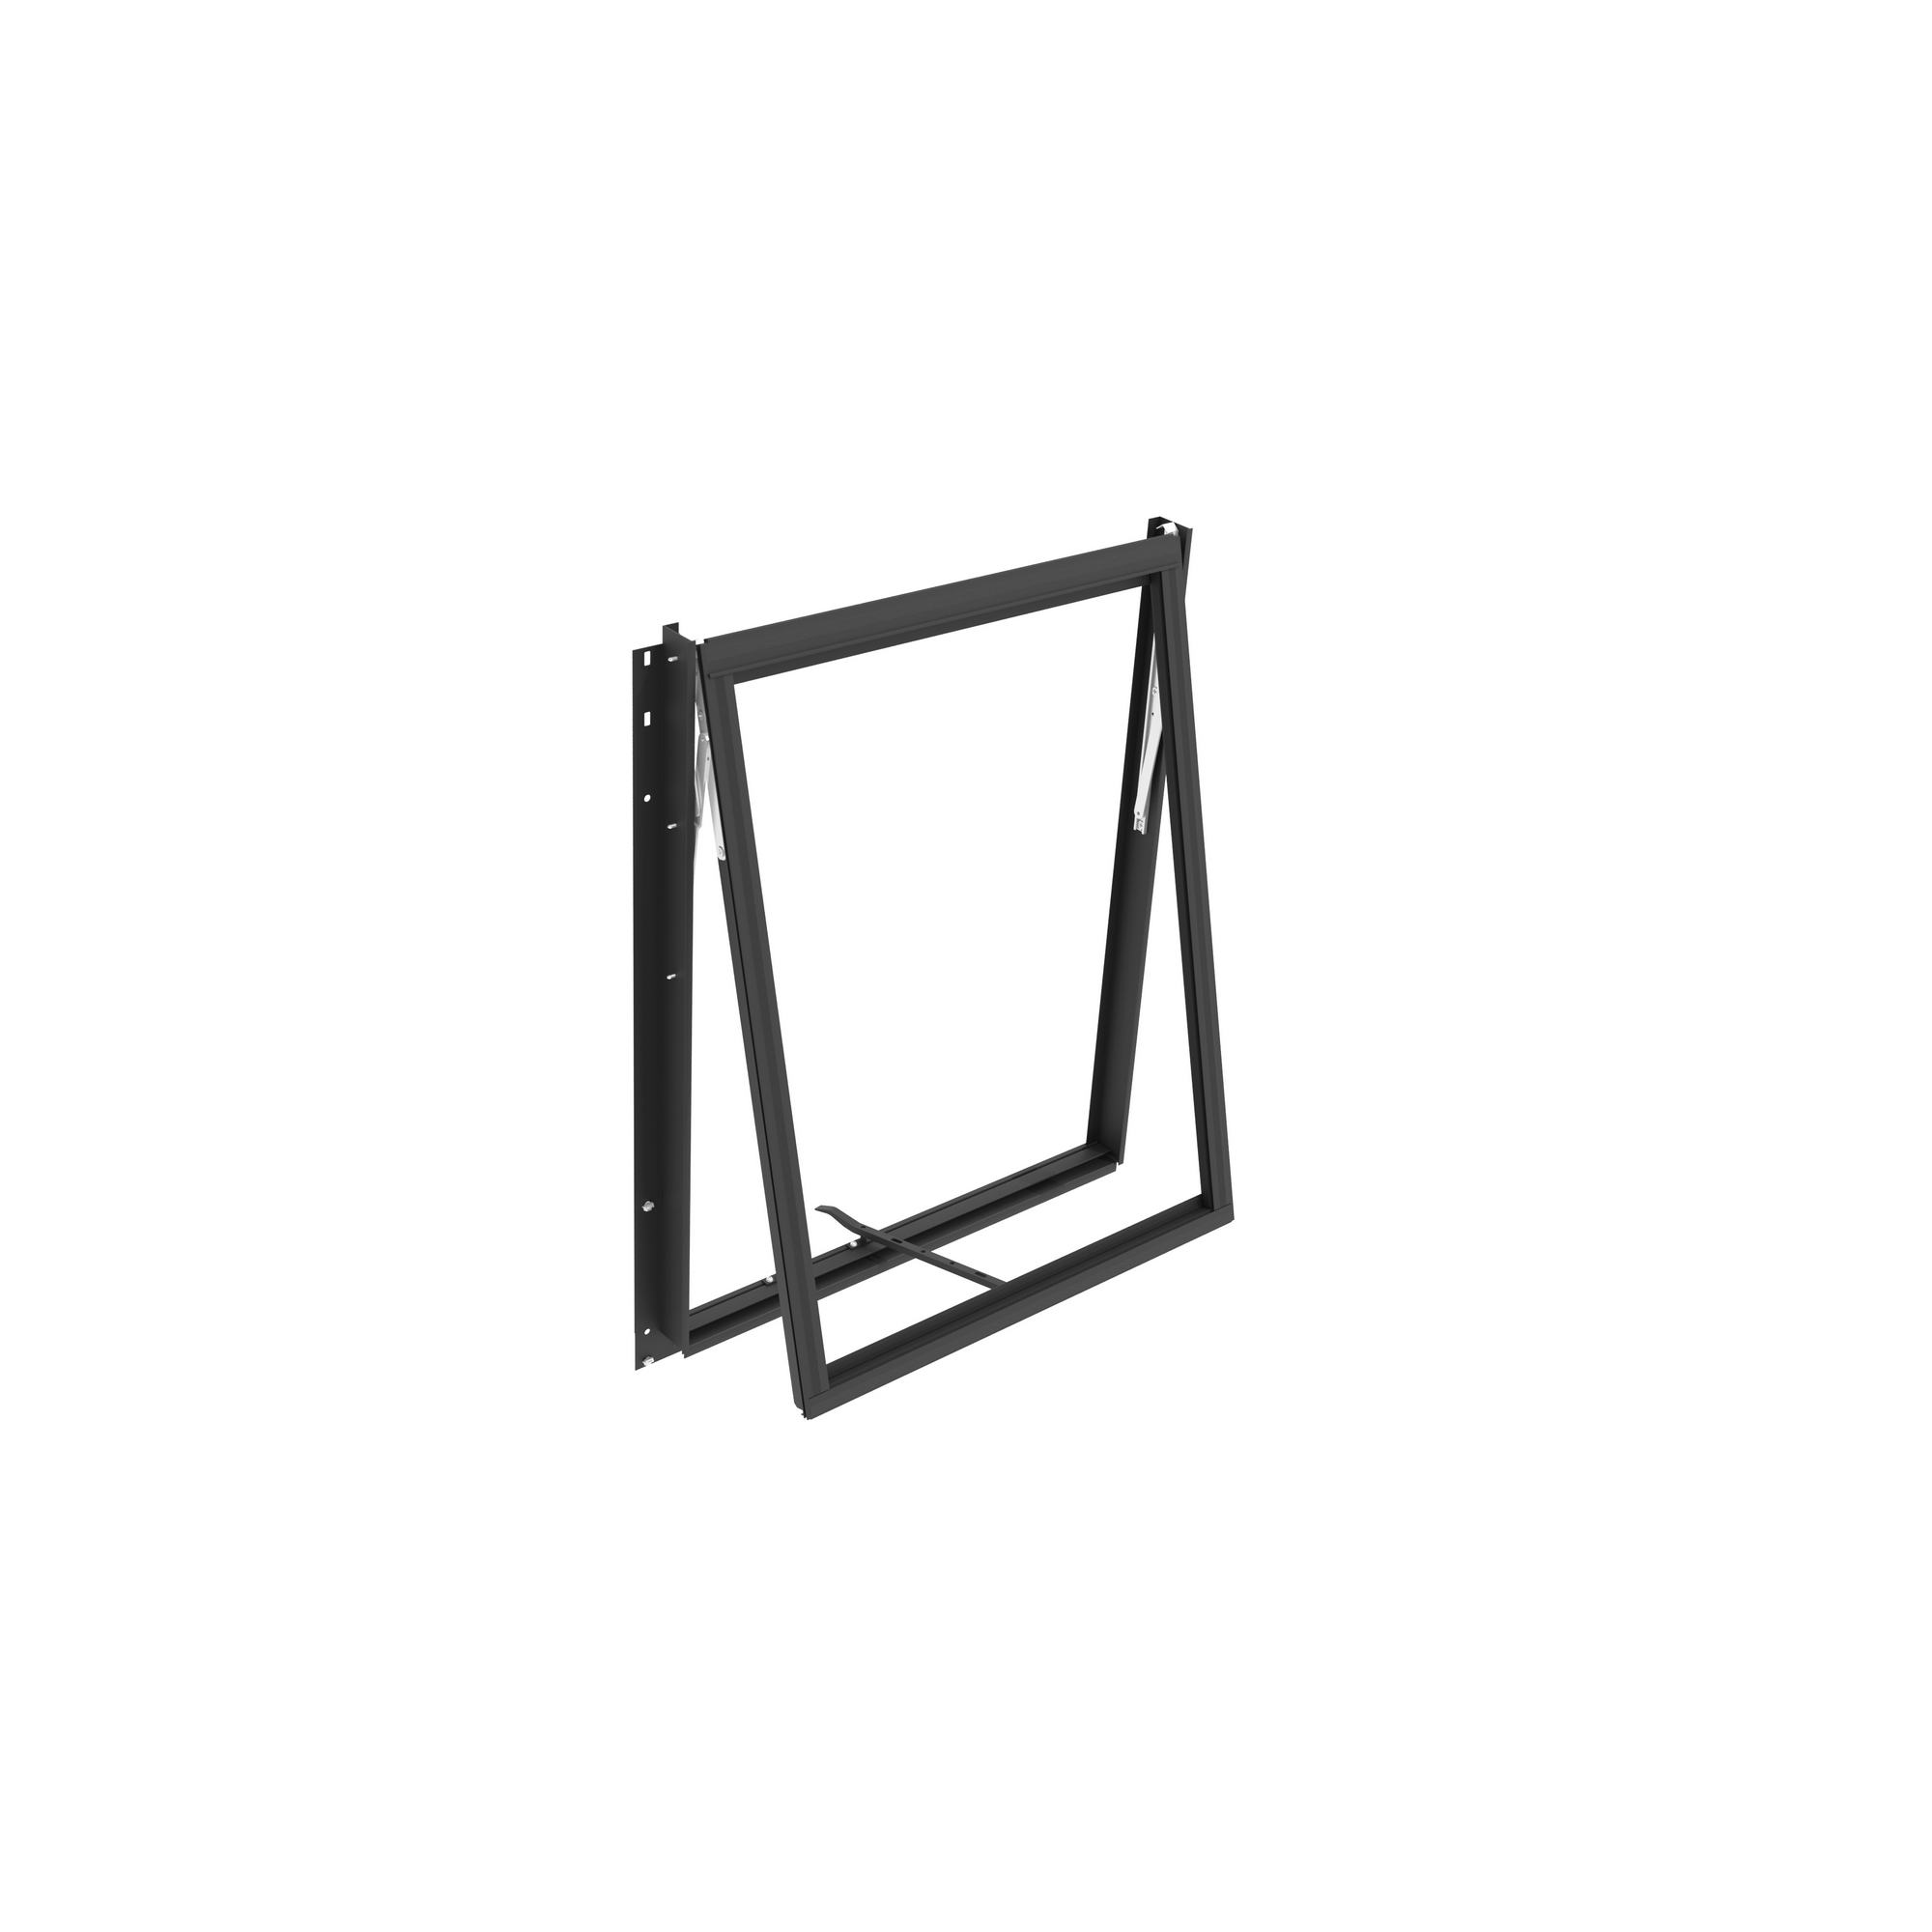 Seitenfenster für Gewächshaus 'Zeus/Comfort/Fortuna' schwarz, ohne Verglasung 86,2 x 70,8 cm + product picture